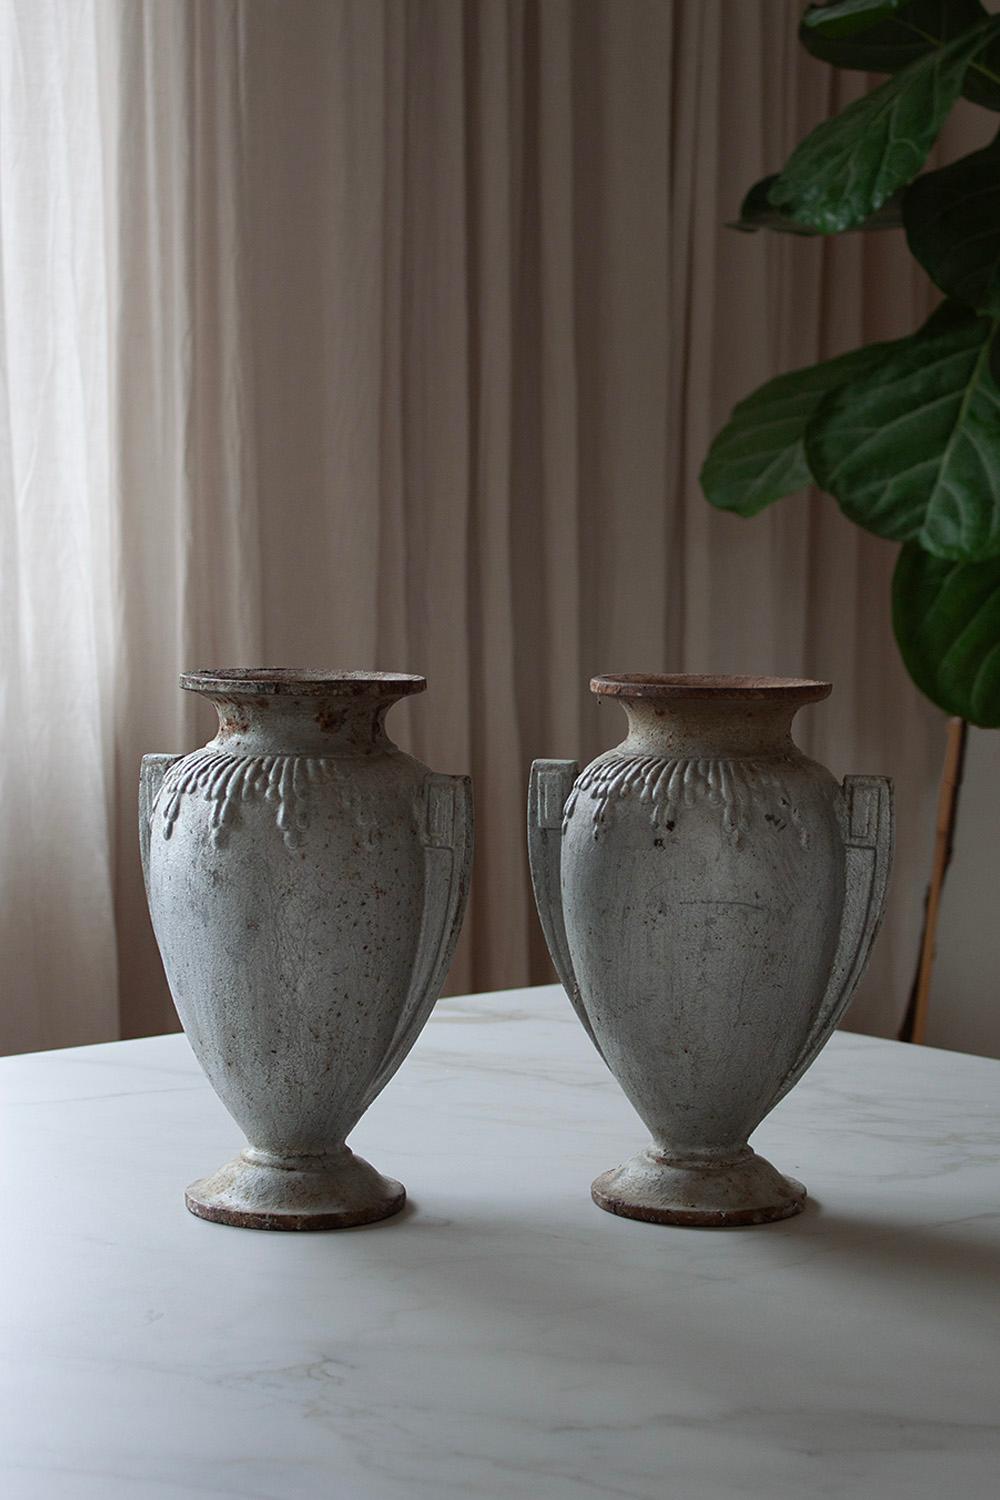 Ce vase Art déco français est un excellent exemple de la façon dont les formes géométriques et organiques peuvent harmonieusement s'associer. 
Ce vase particulier se distingue par sa silhouette élégante et son motif géométrique qui évoque le style